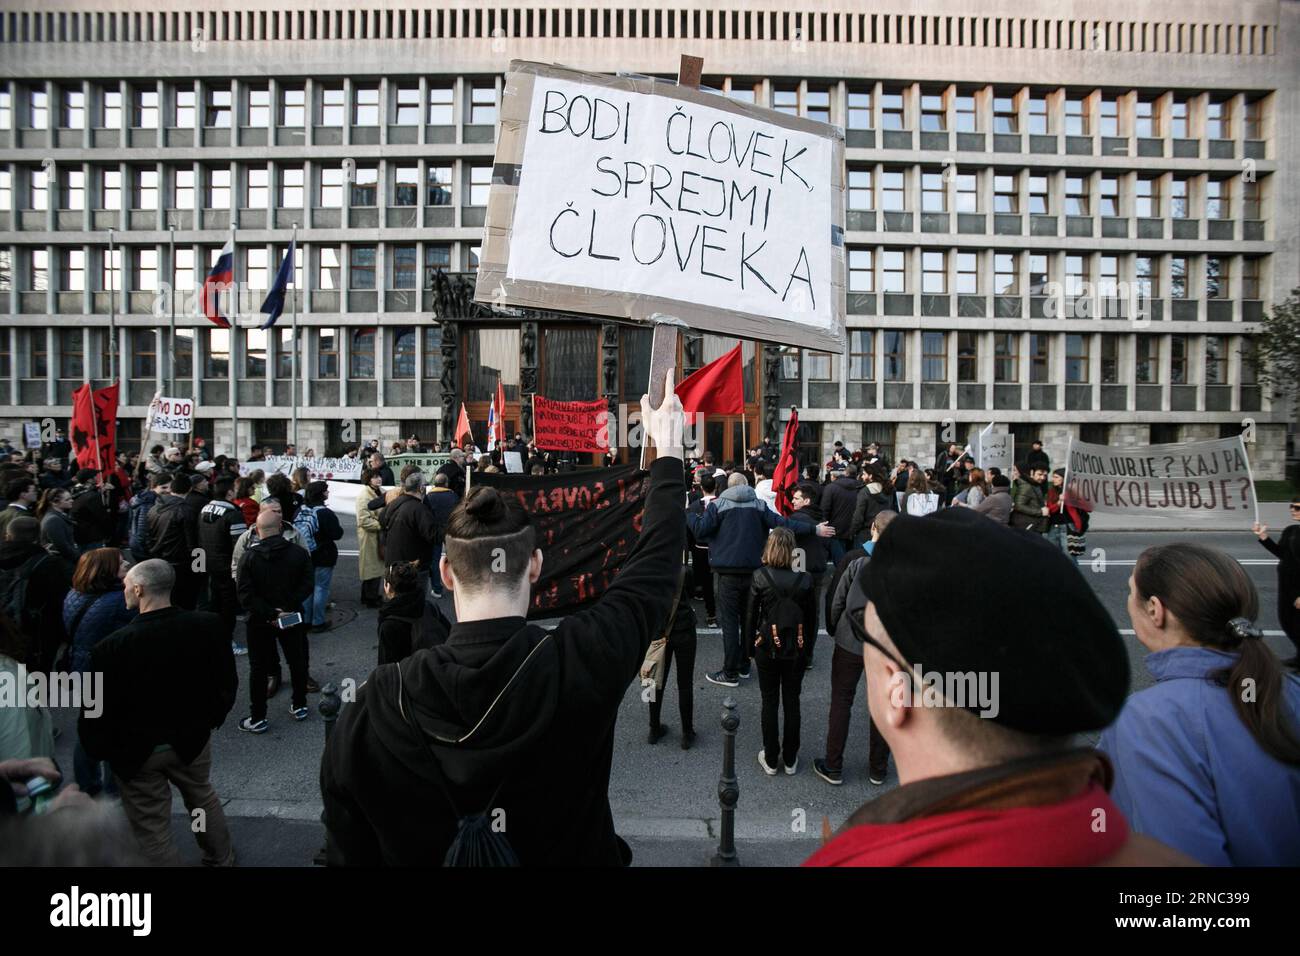 (160320) -- LUBIANA, 20 marzo 2016 -- Un manifestante porta uno striscione che recita essere umani, accettare un essere umano durante una protesta contro il razzismo e il fascismo a Lubiana, in Slovenia, 19 marzo 2016. Centinaia di persone si sono riunite sabato in piazza del Congresso in una protesta contro il fascismo e il razzismo, invitando il governo a cambiare la sua politica in materia di rifugiati e ad aprire i confini della Slovenia. SLOVENIA-LUBIANA-RALLY LukaxDakskobler PUBLICATIONxNOTxINxCHN Lubiana 20 marzo 2016 un manifestante porta un banner Thatcher legge essere umano Accetta un umano durante una protesta contro il razzismo e il fascismo a Lubiana Foto Stock